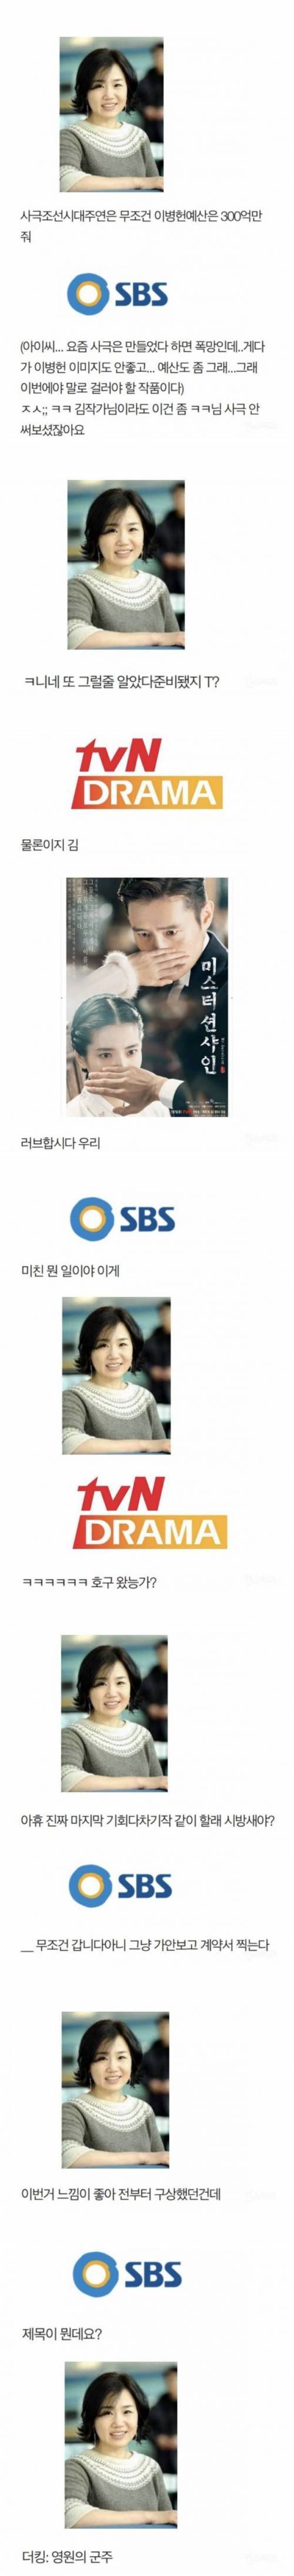 [스압] 김은숙과 SBS의 케미.jpg